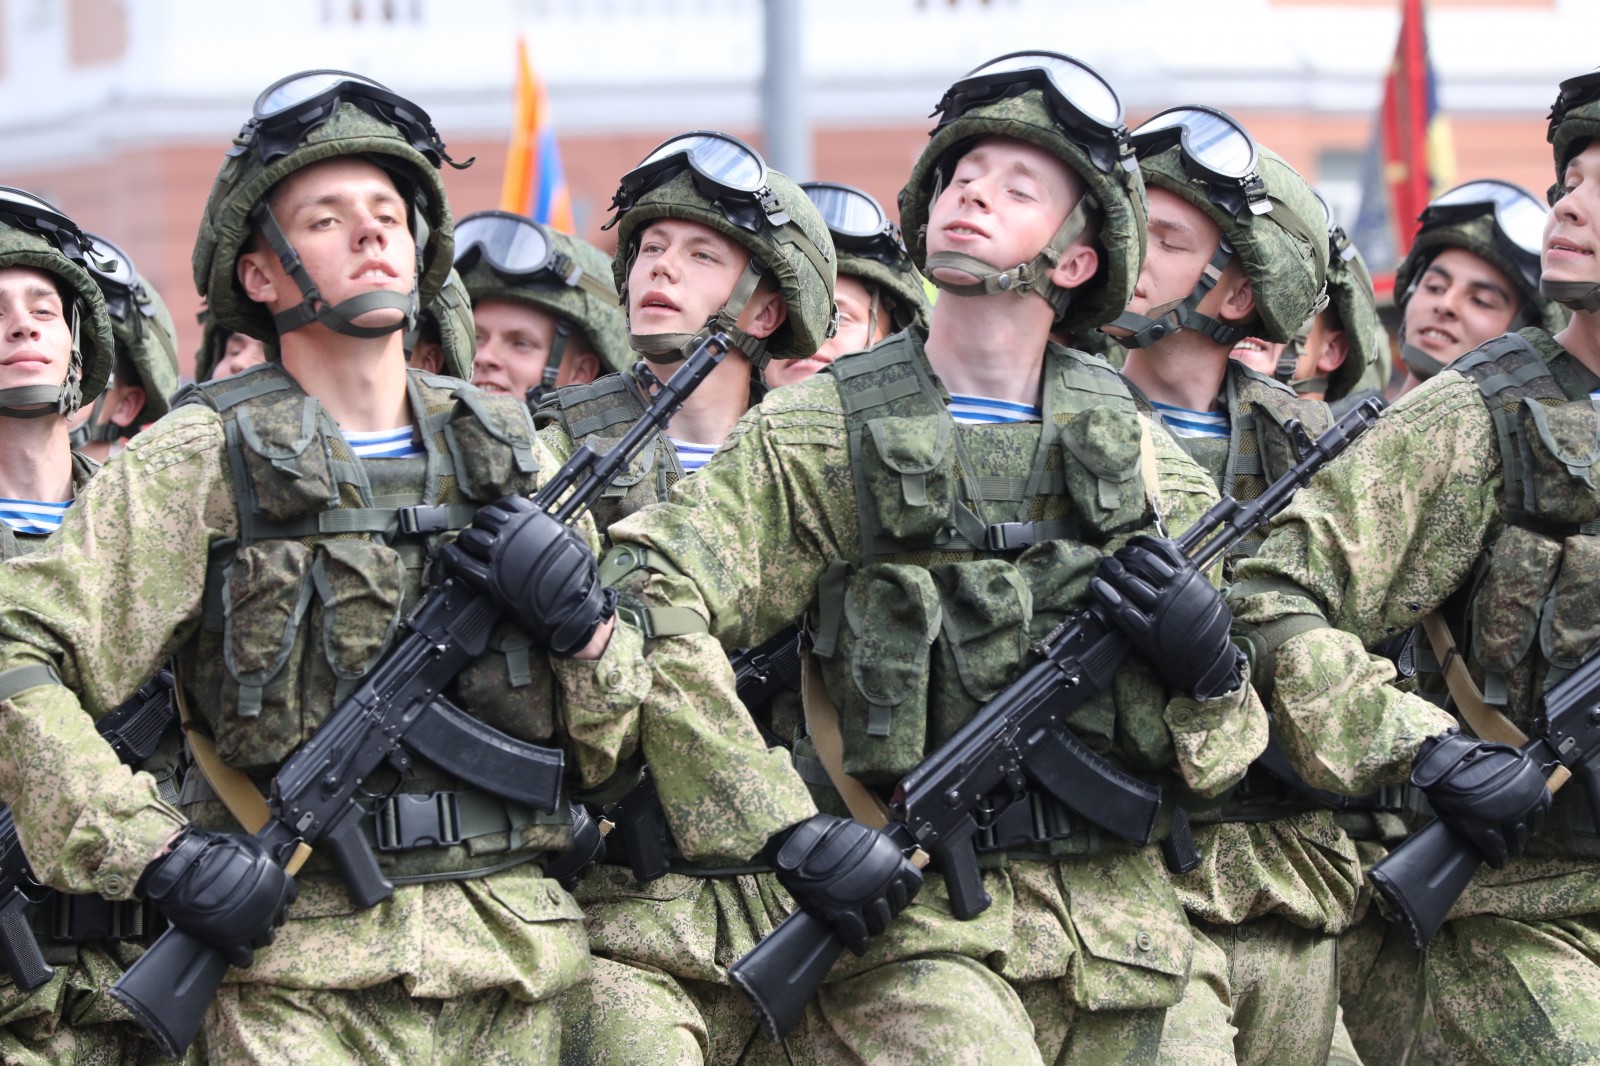 Проход на парад Победы 9 мая в Нижнем Новгороде будет организован через КПП